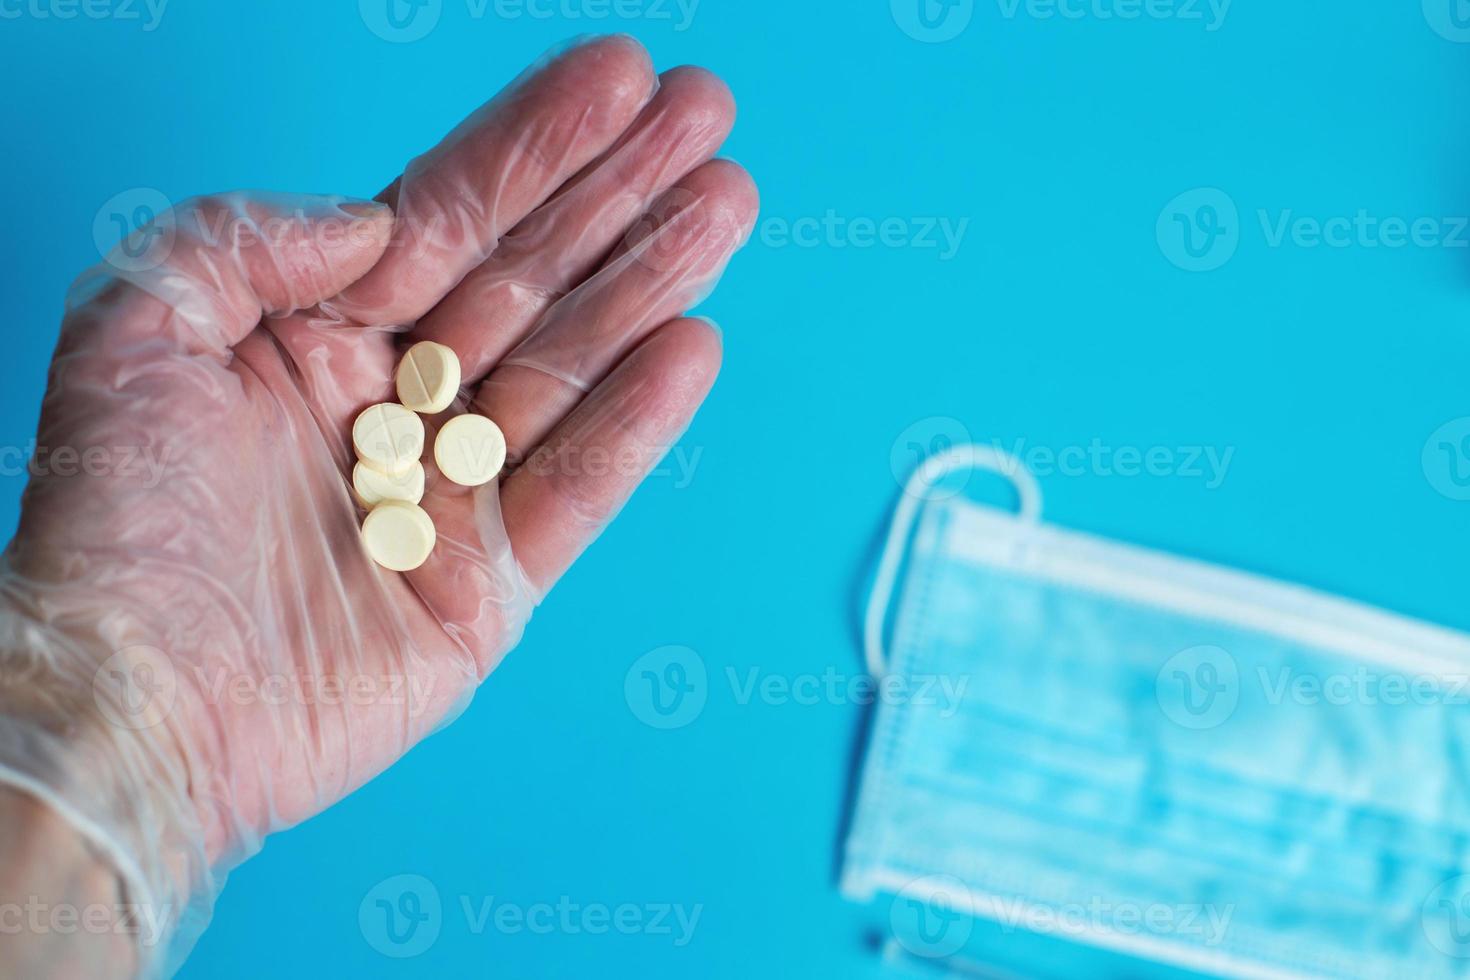 la máscara médica y las tabletas se cierran sobre el fondo azul. la mano sostiene la píldora. coronavirus, concepto de enfermedad respiratoria gripal foto